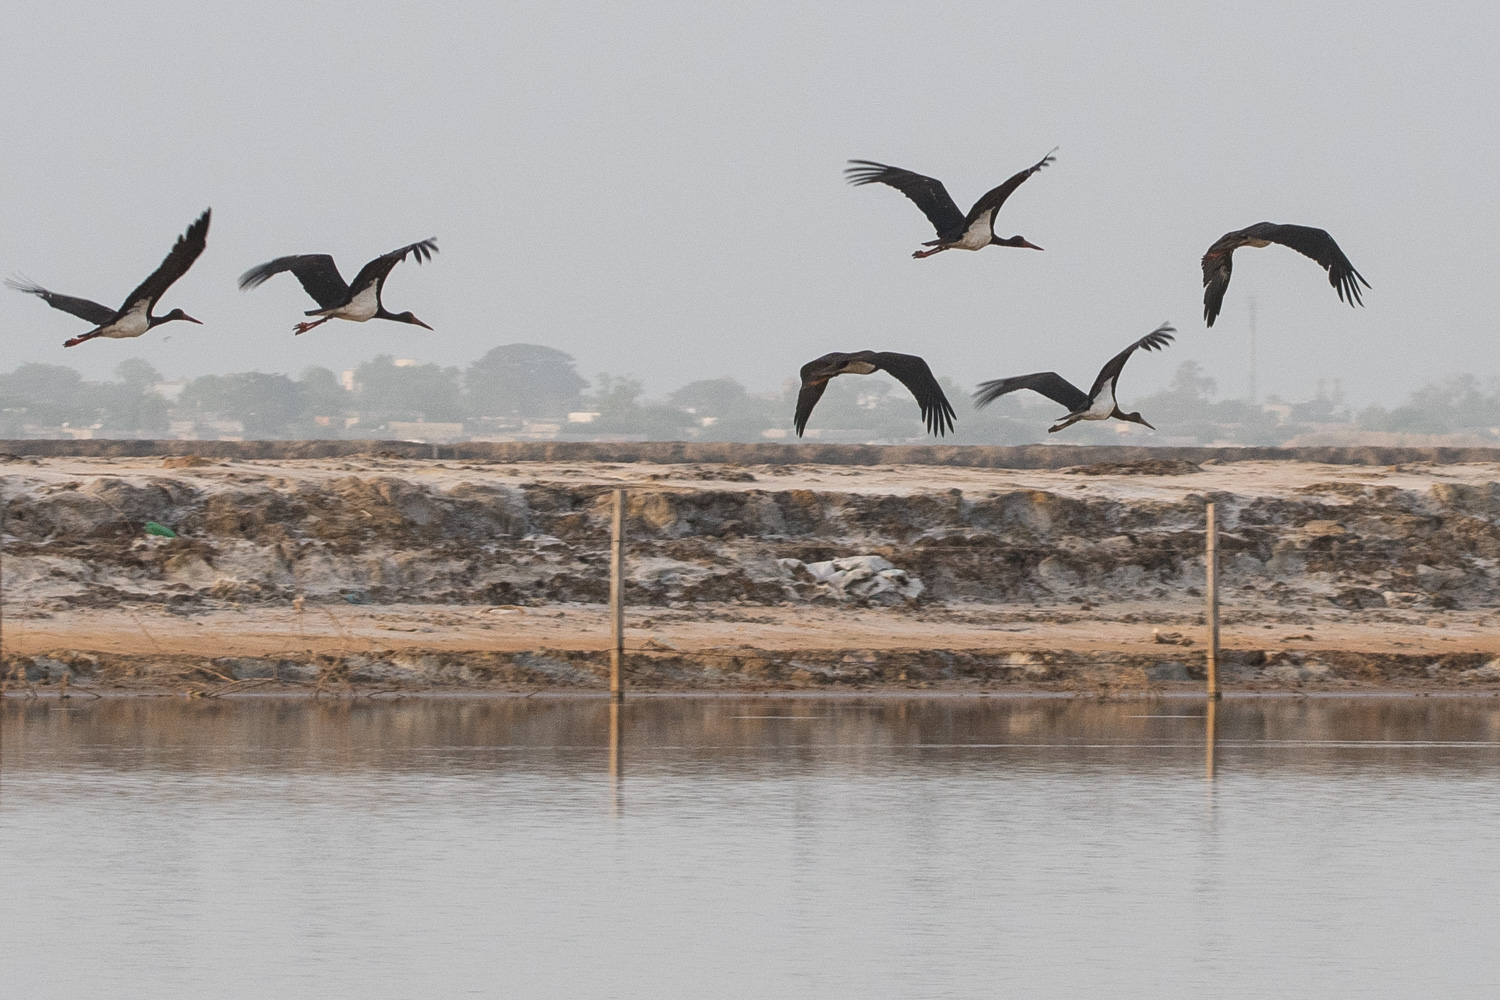 Cigognes noires (Black Stork, Ciconia Nigra), gros plan sur l' envol de 6 individus devant la zone de production de sel de la ville de Kaolack, Sénégal.